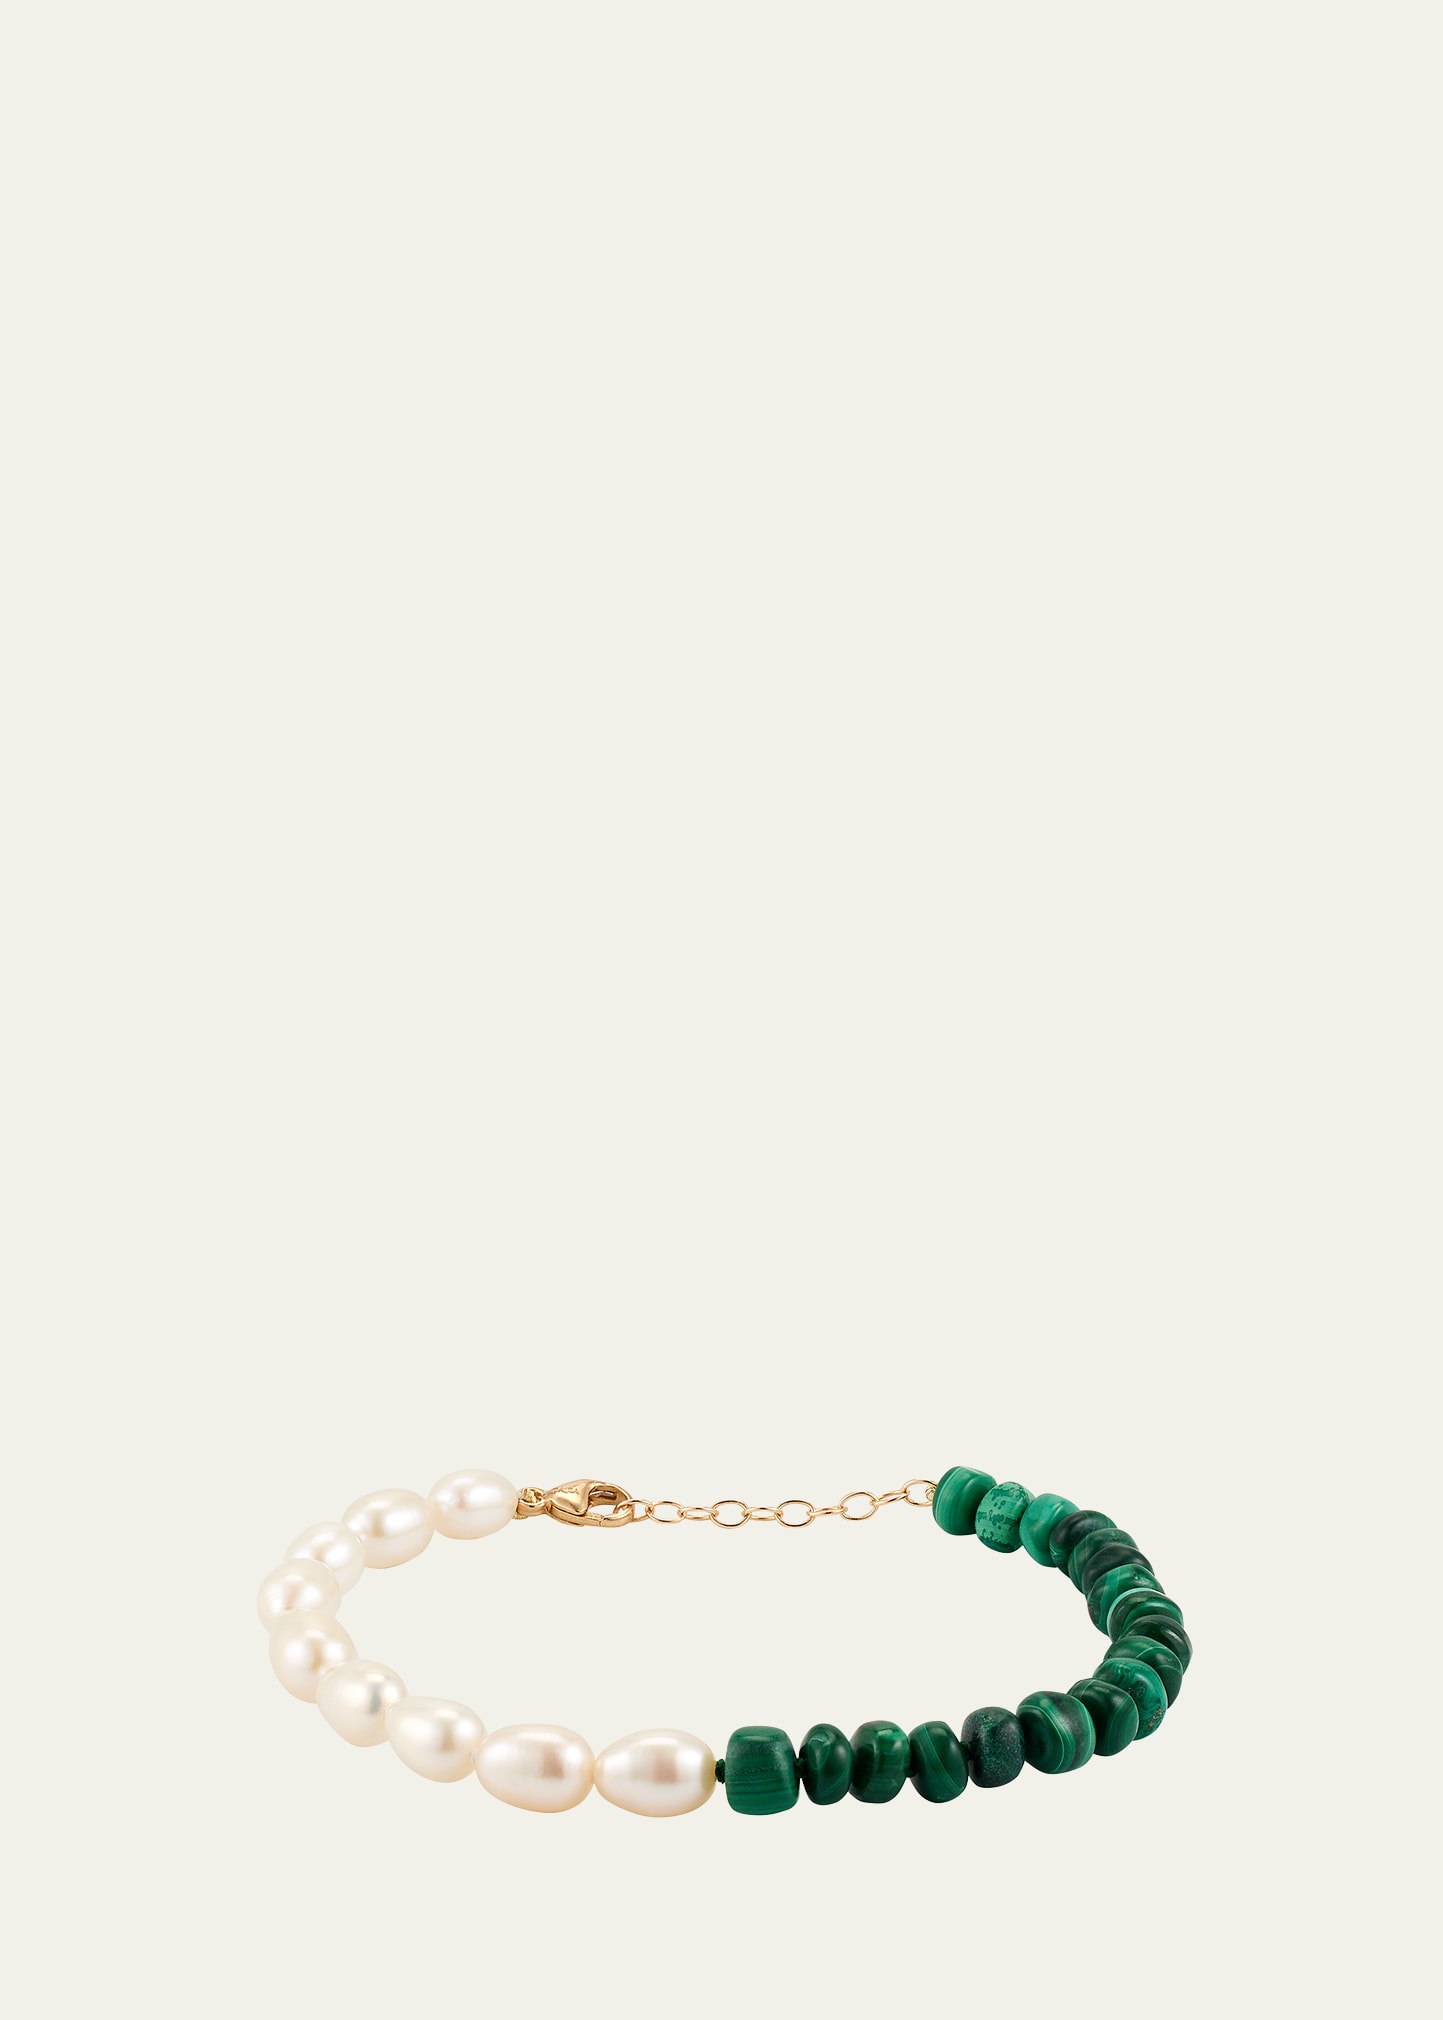 14K Malachite Jumbo Pearl Union Bracelet, 7"L